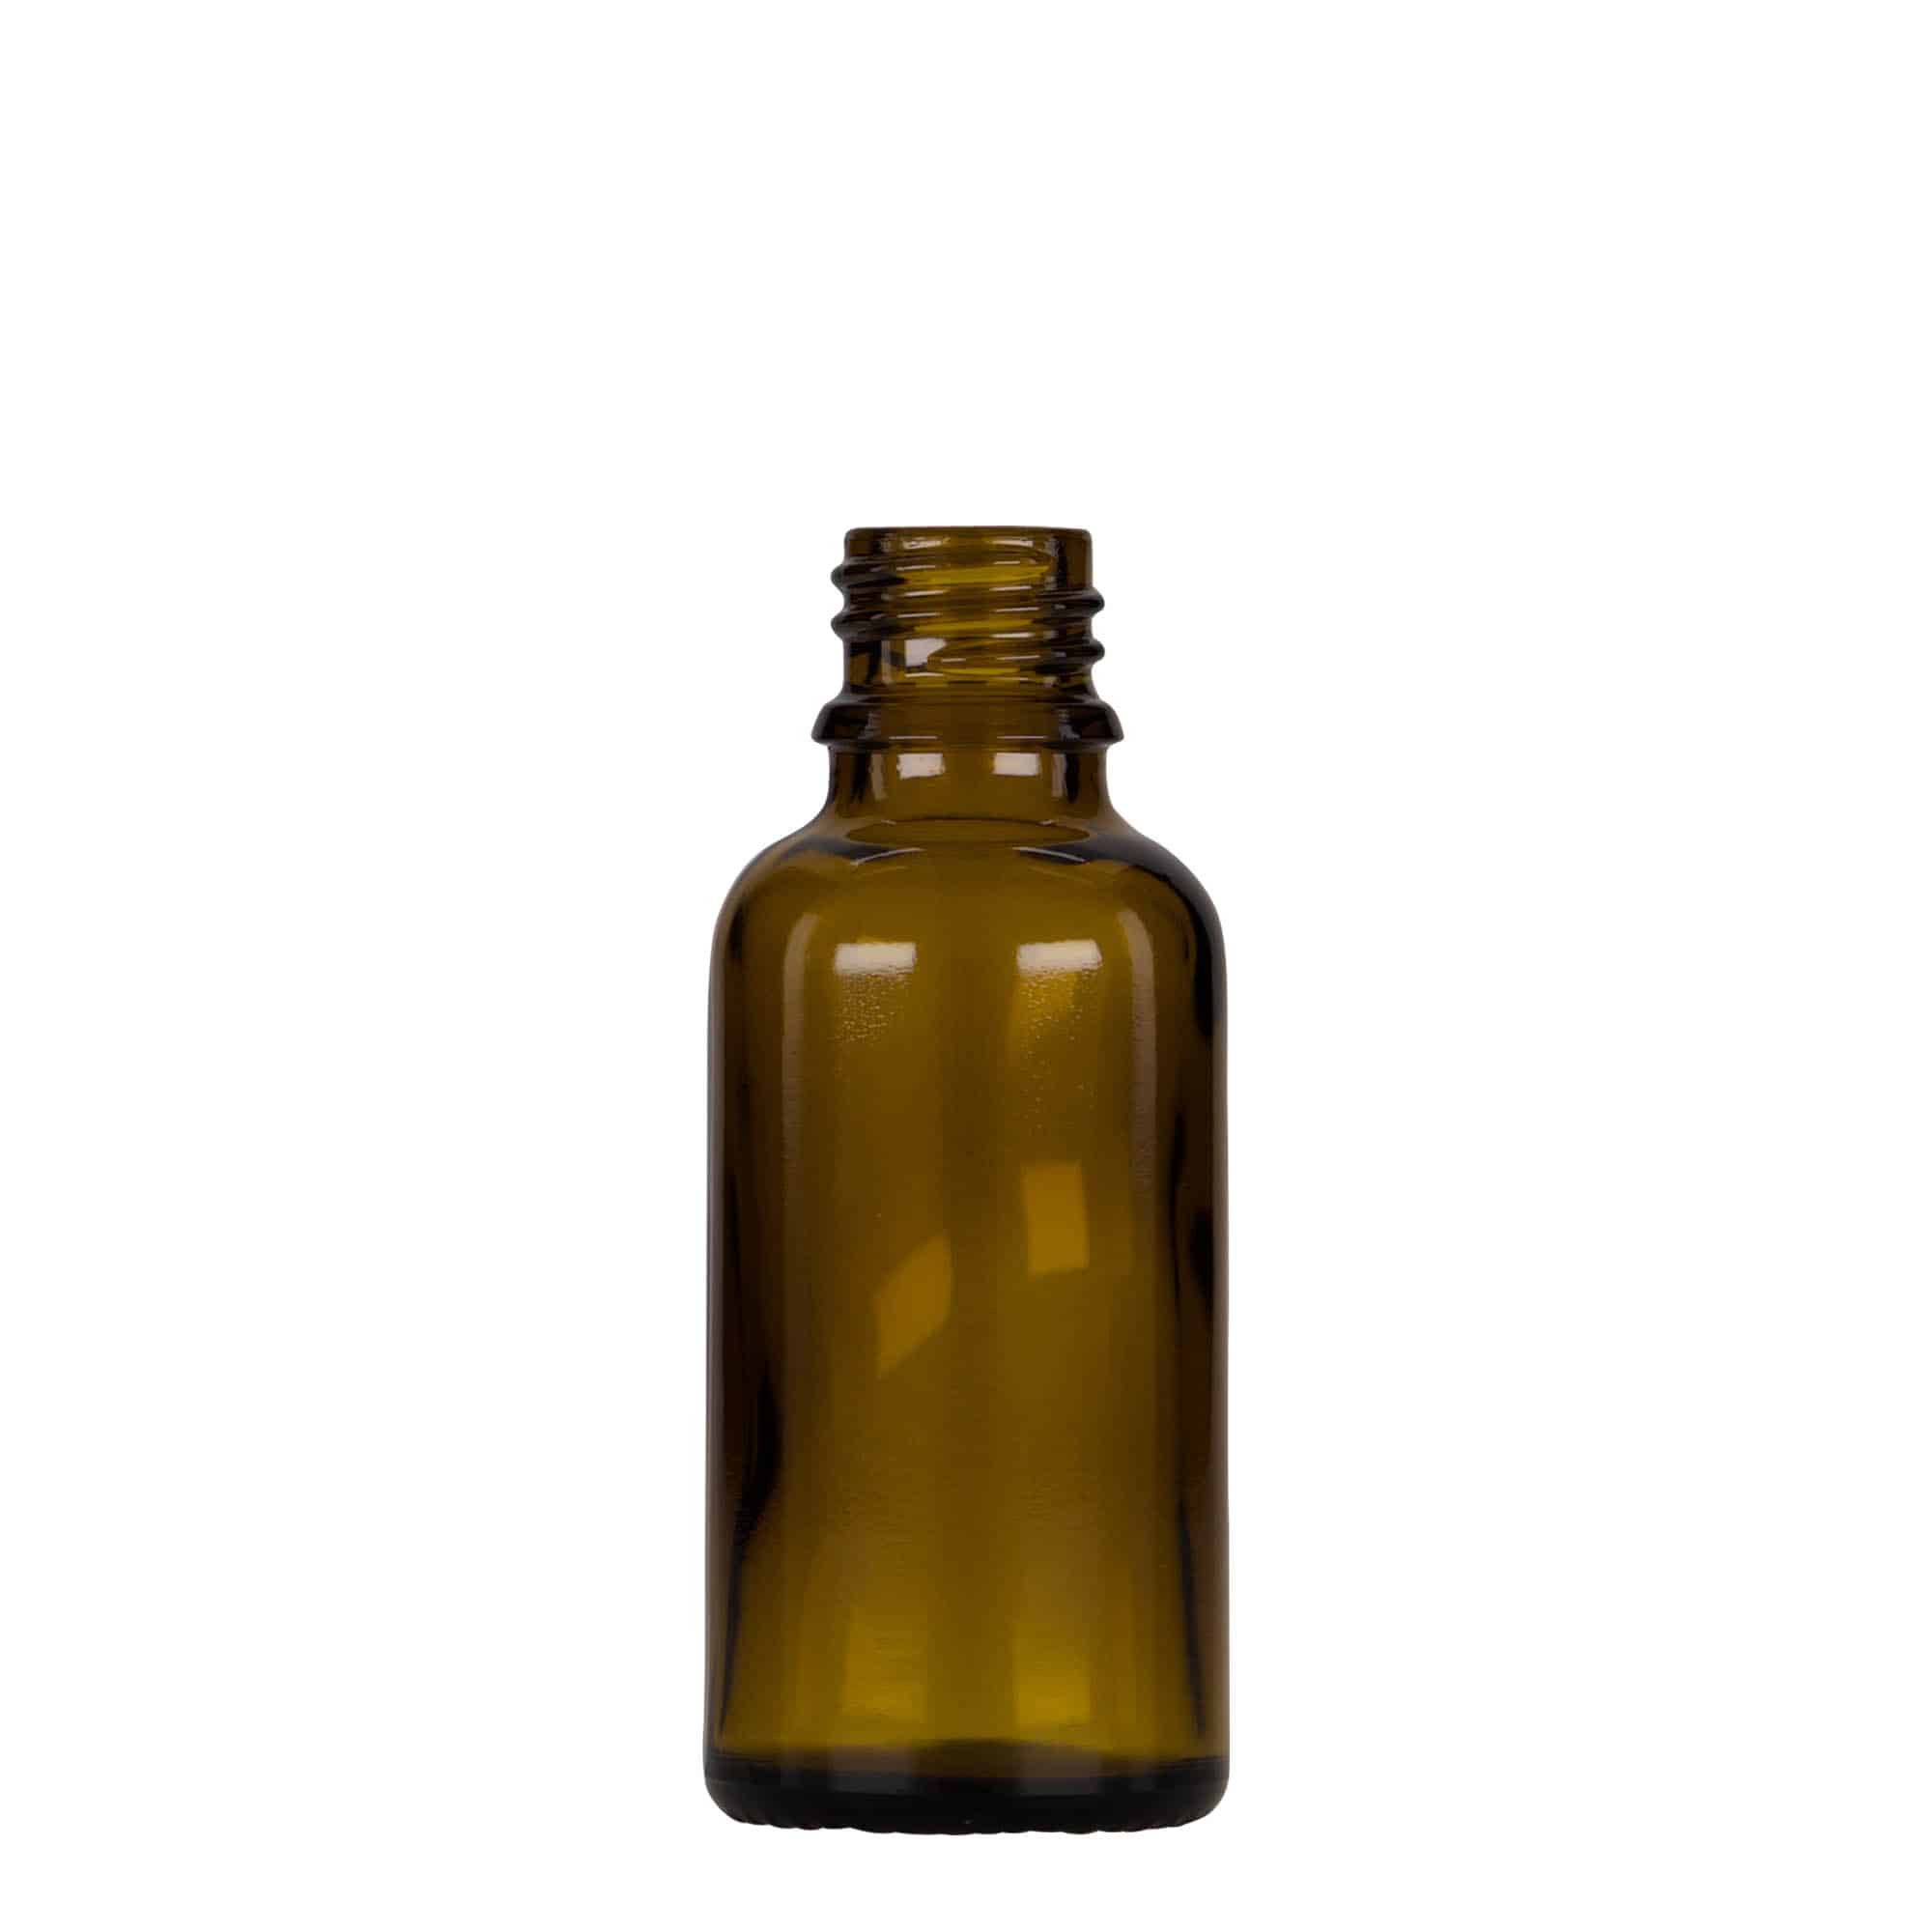 30 ml medicine pipette bottle, glass, brown/black, closure: DIN 18